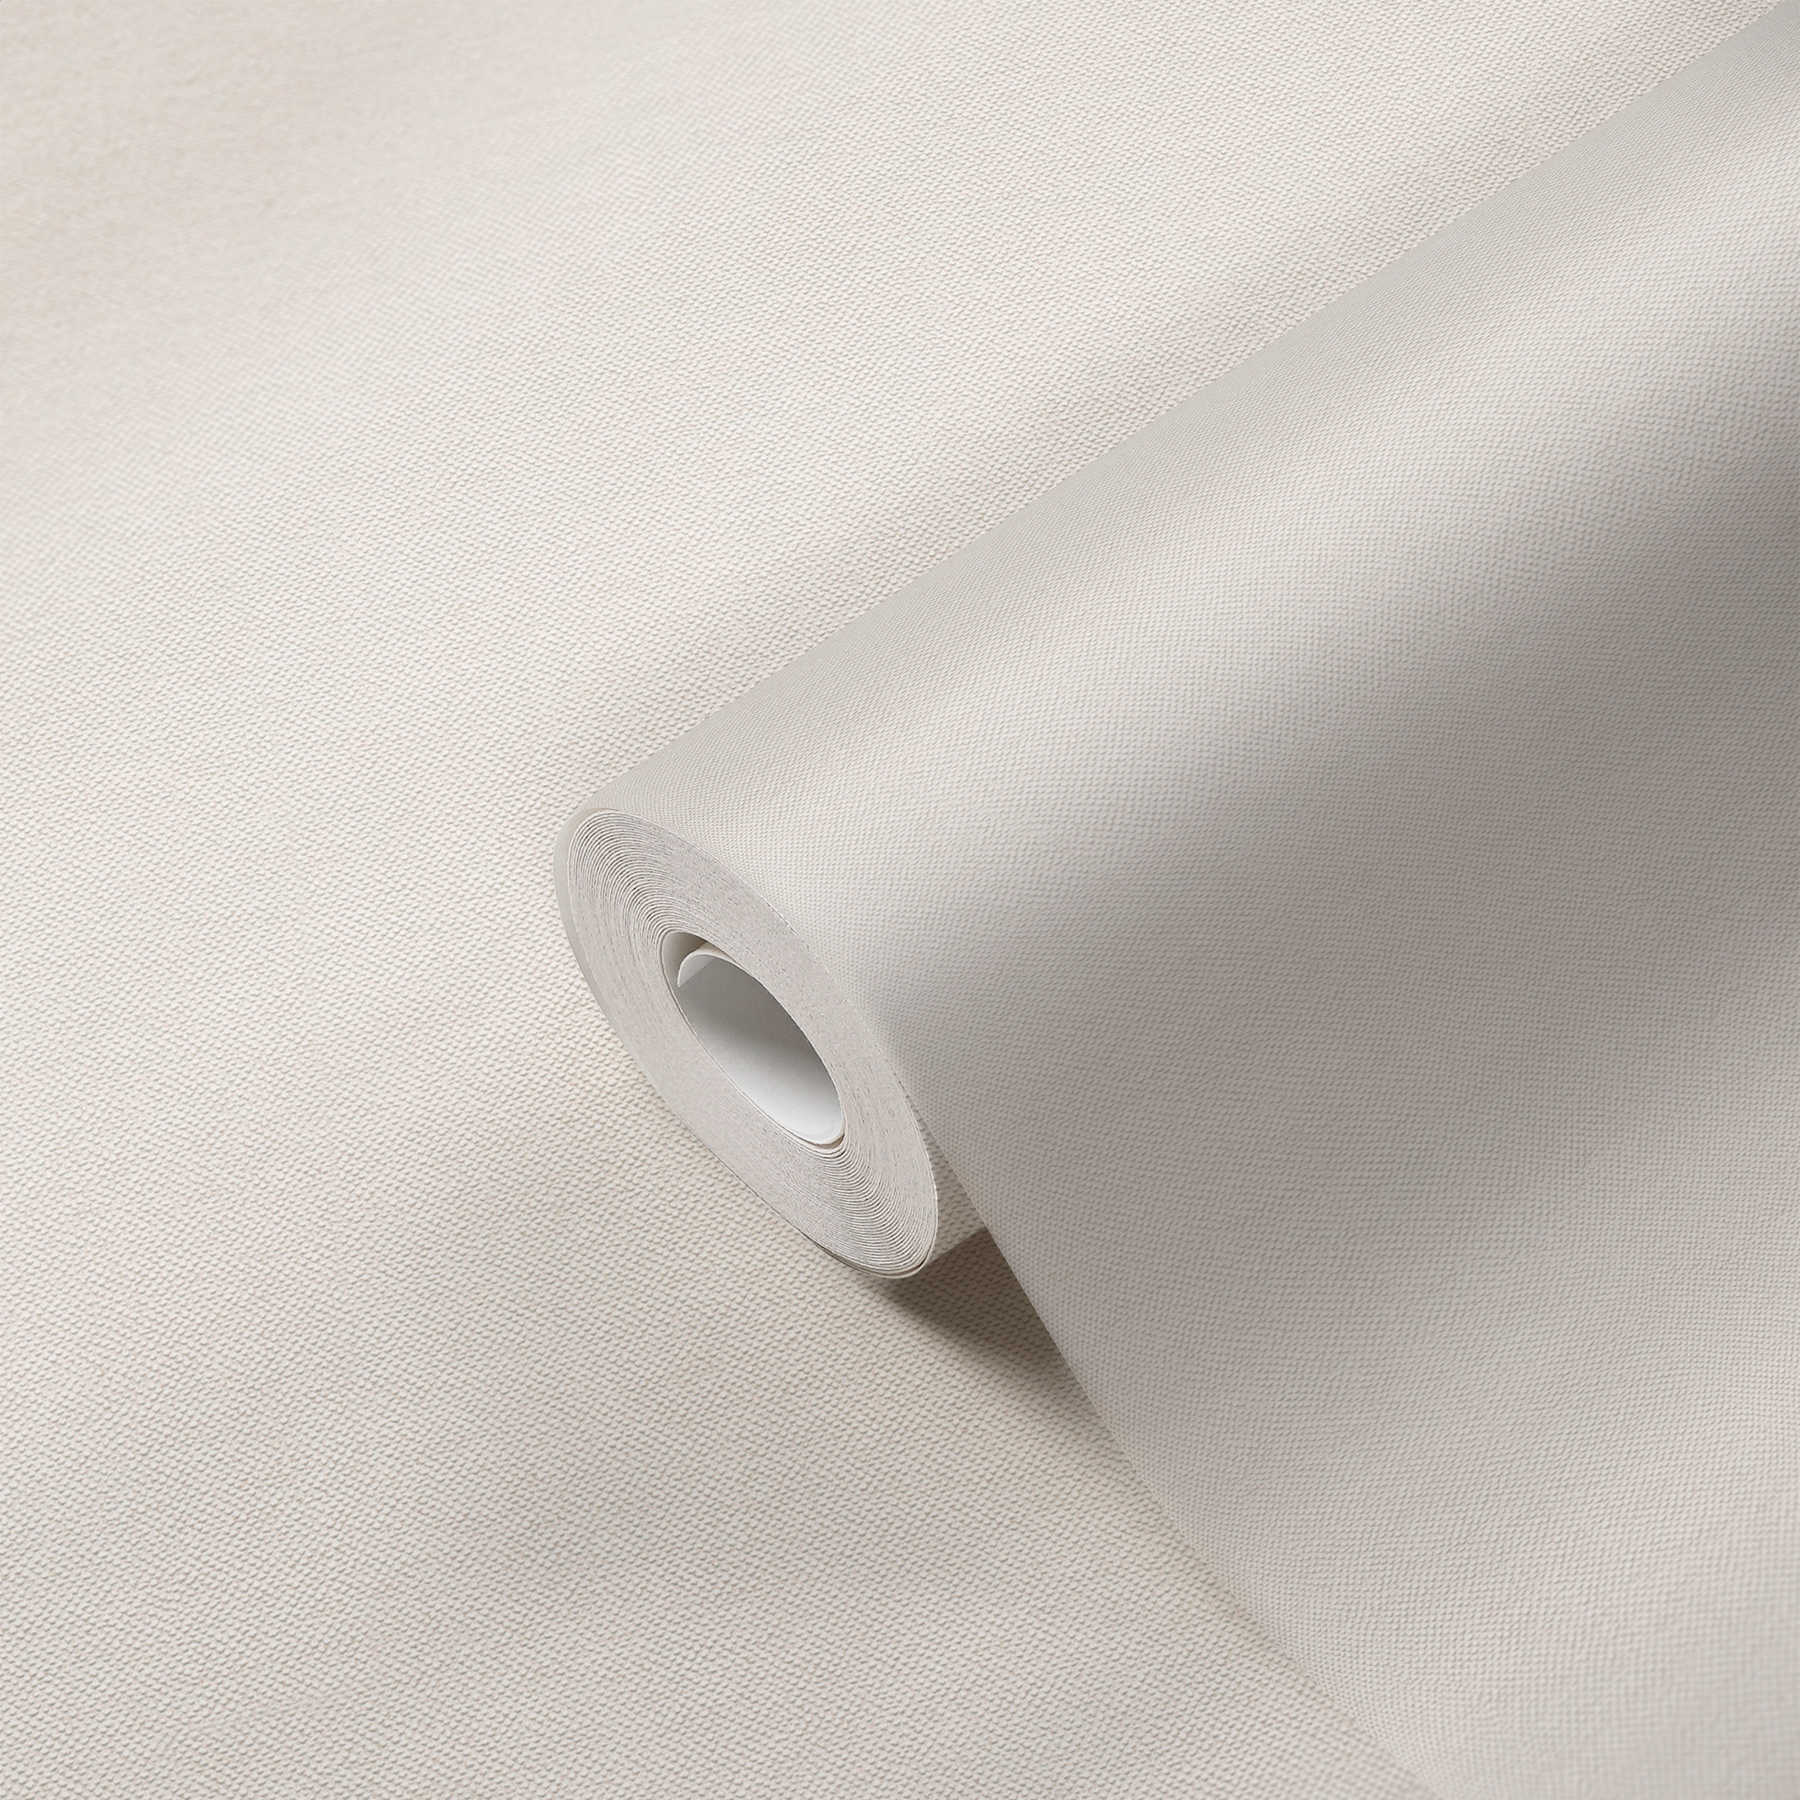             Uni Tapete Creme-Weiß mit Textil-Struktur
        